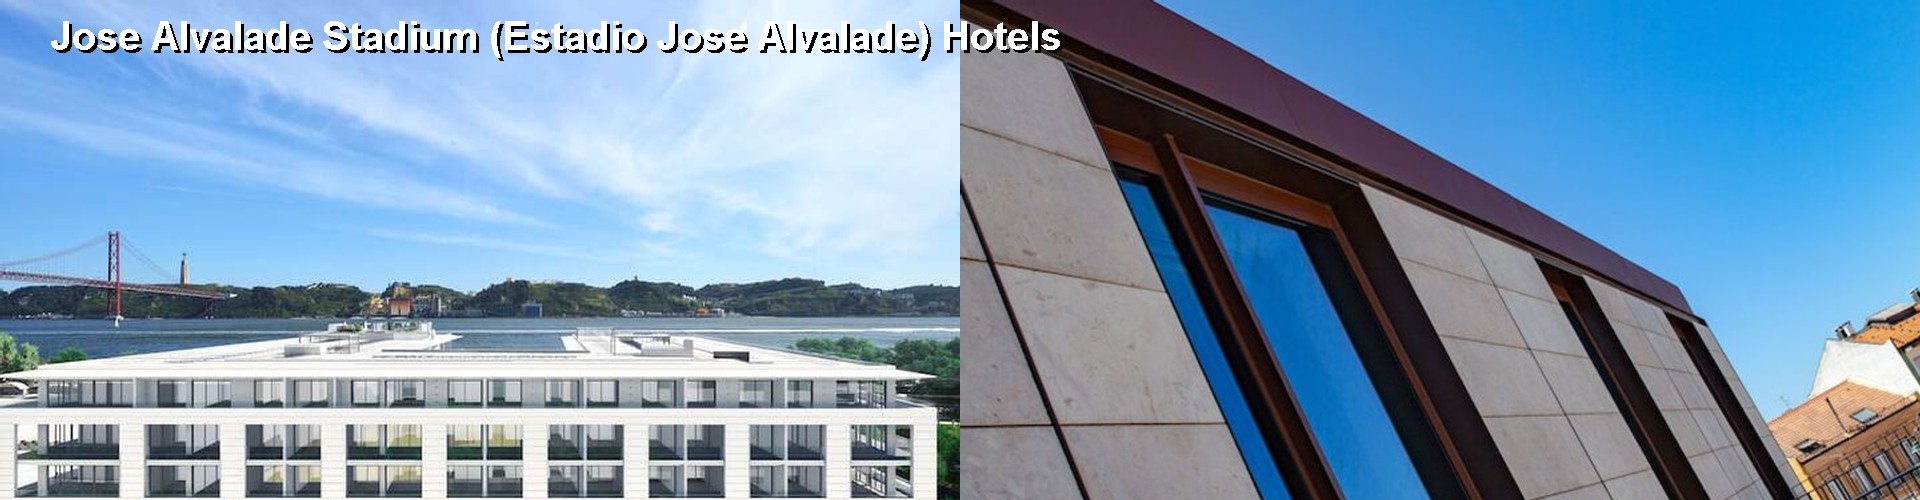 5 Best Hotels near Jose Alvalade Stadium (Estadio Jose Alvalade)